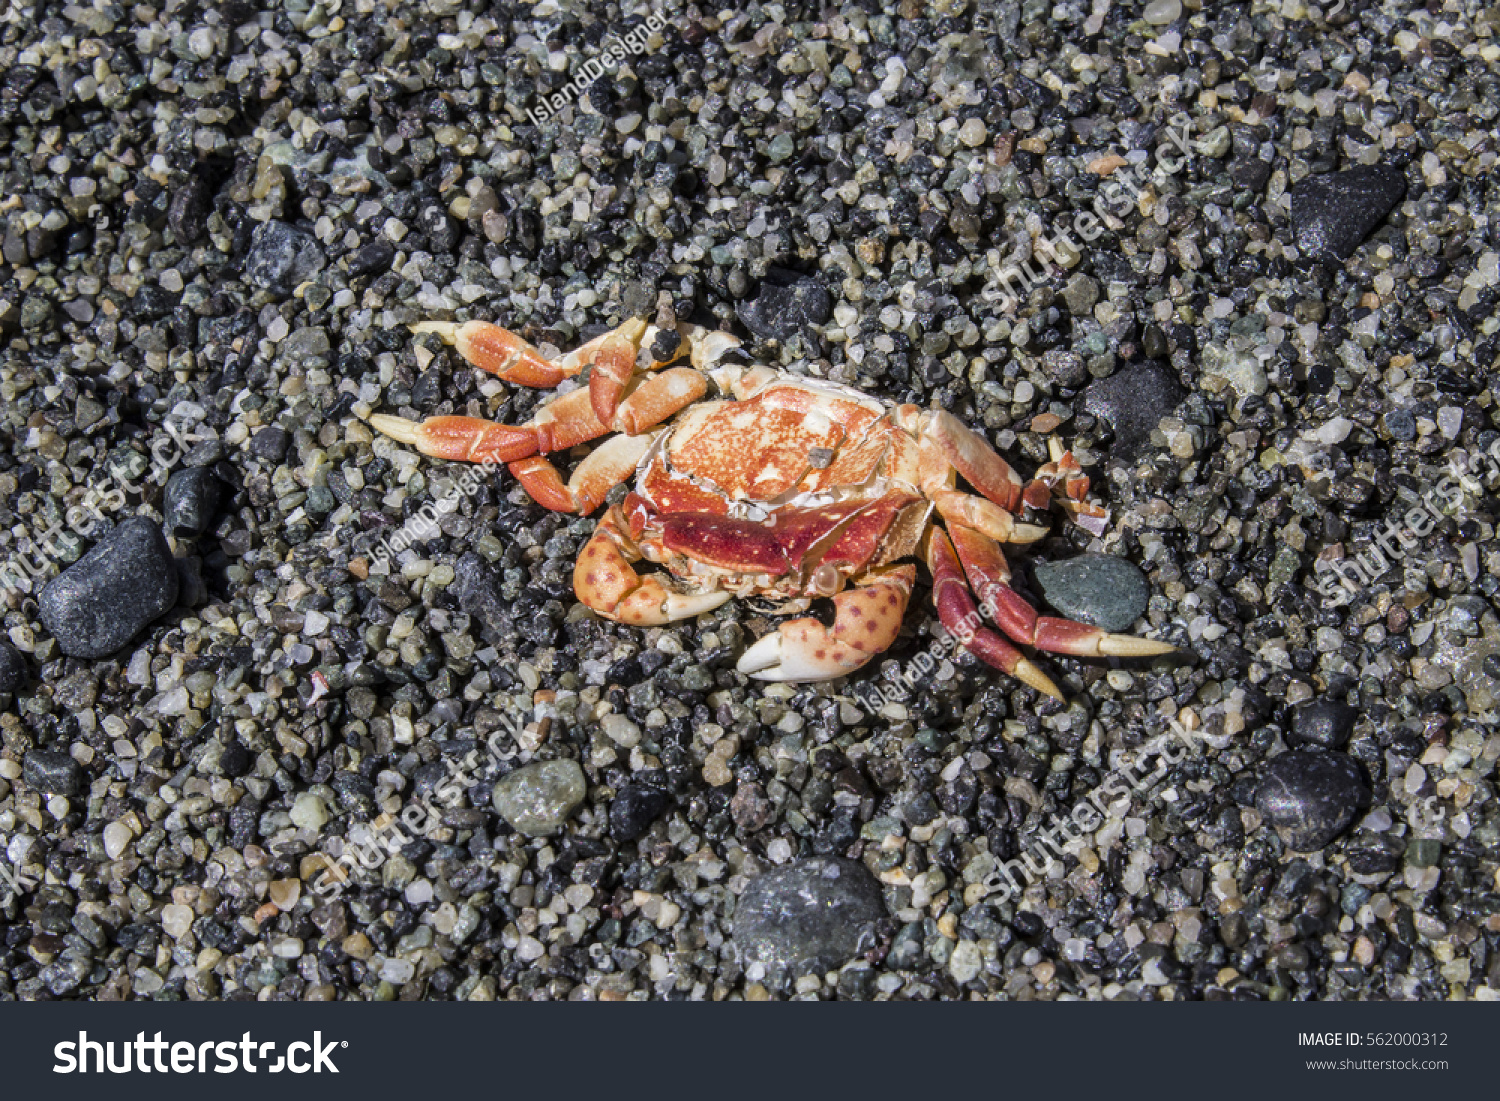 Crab crush